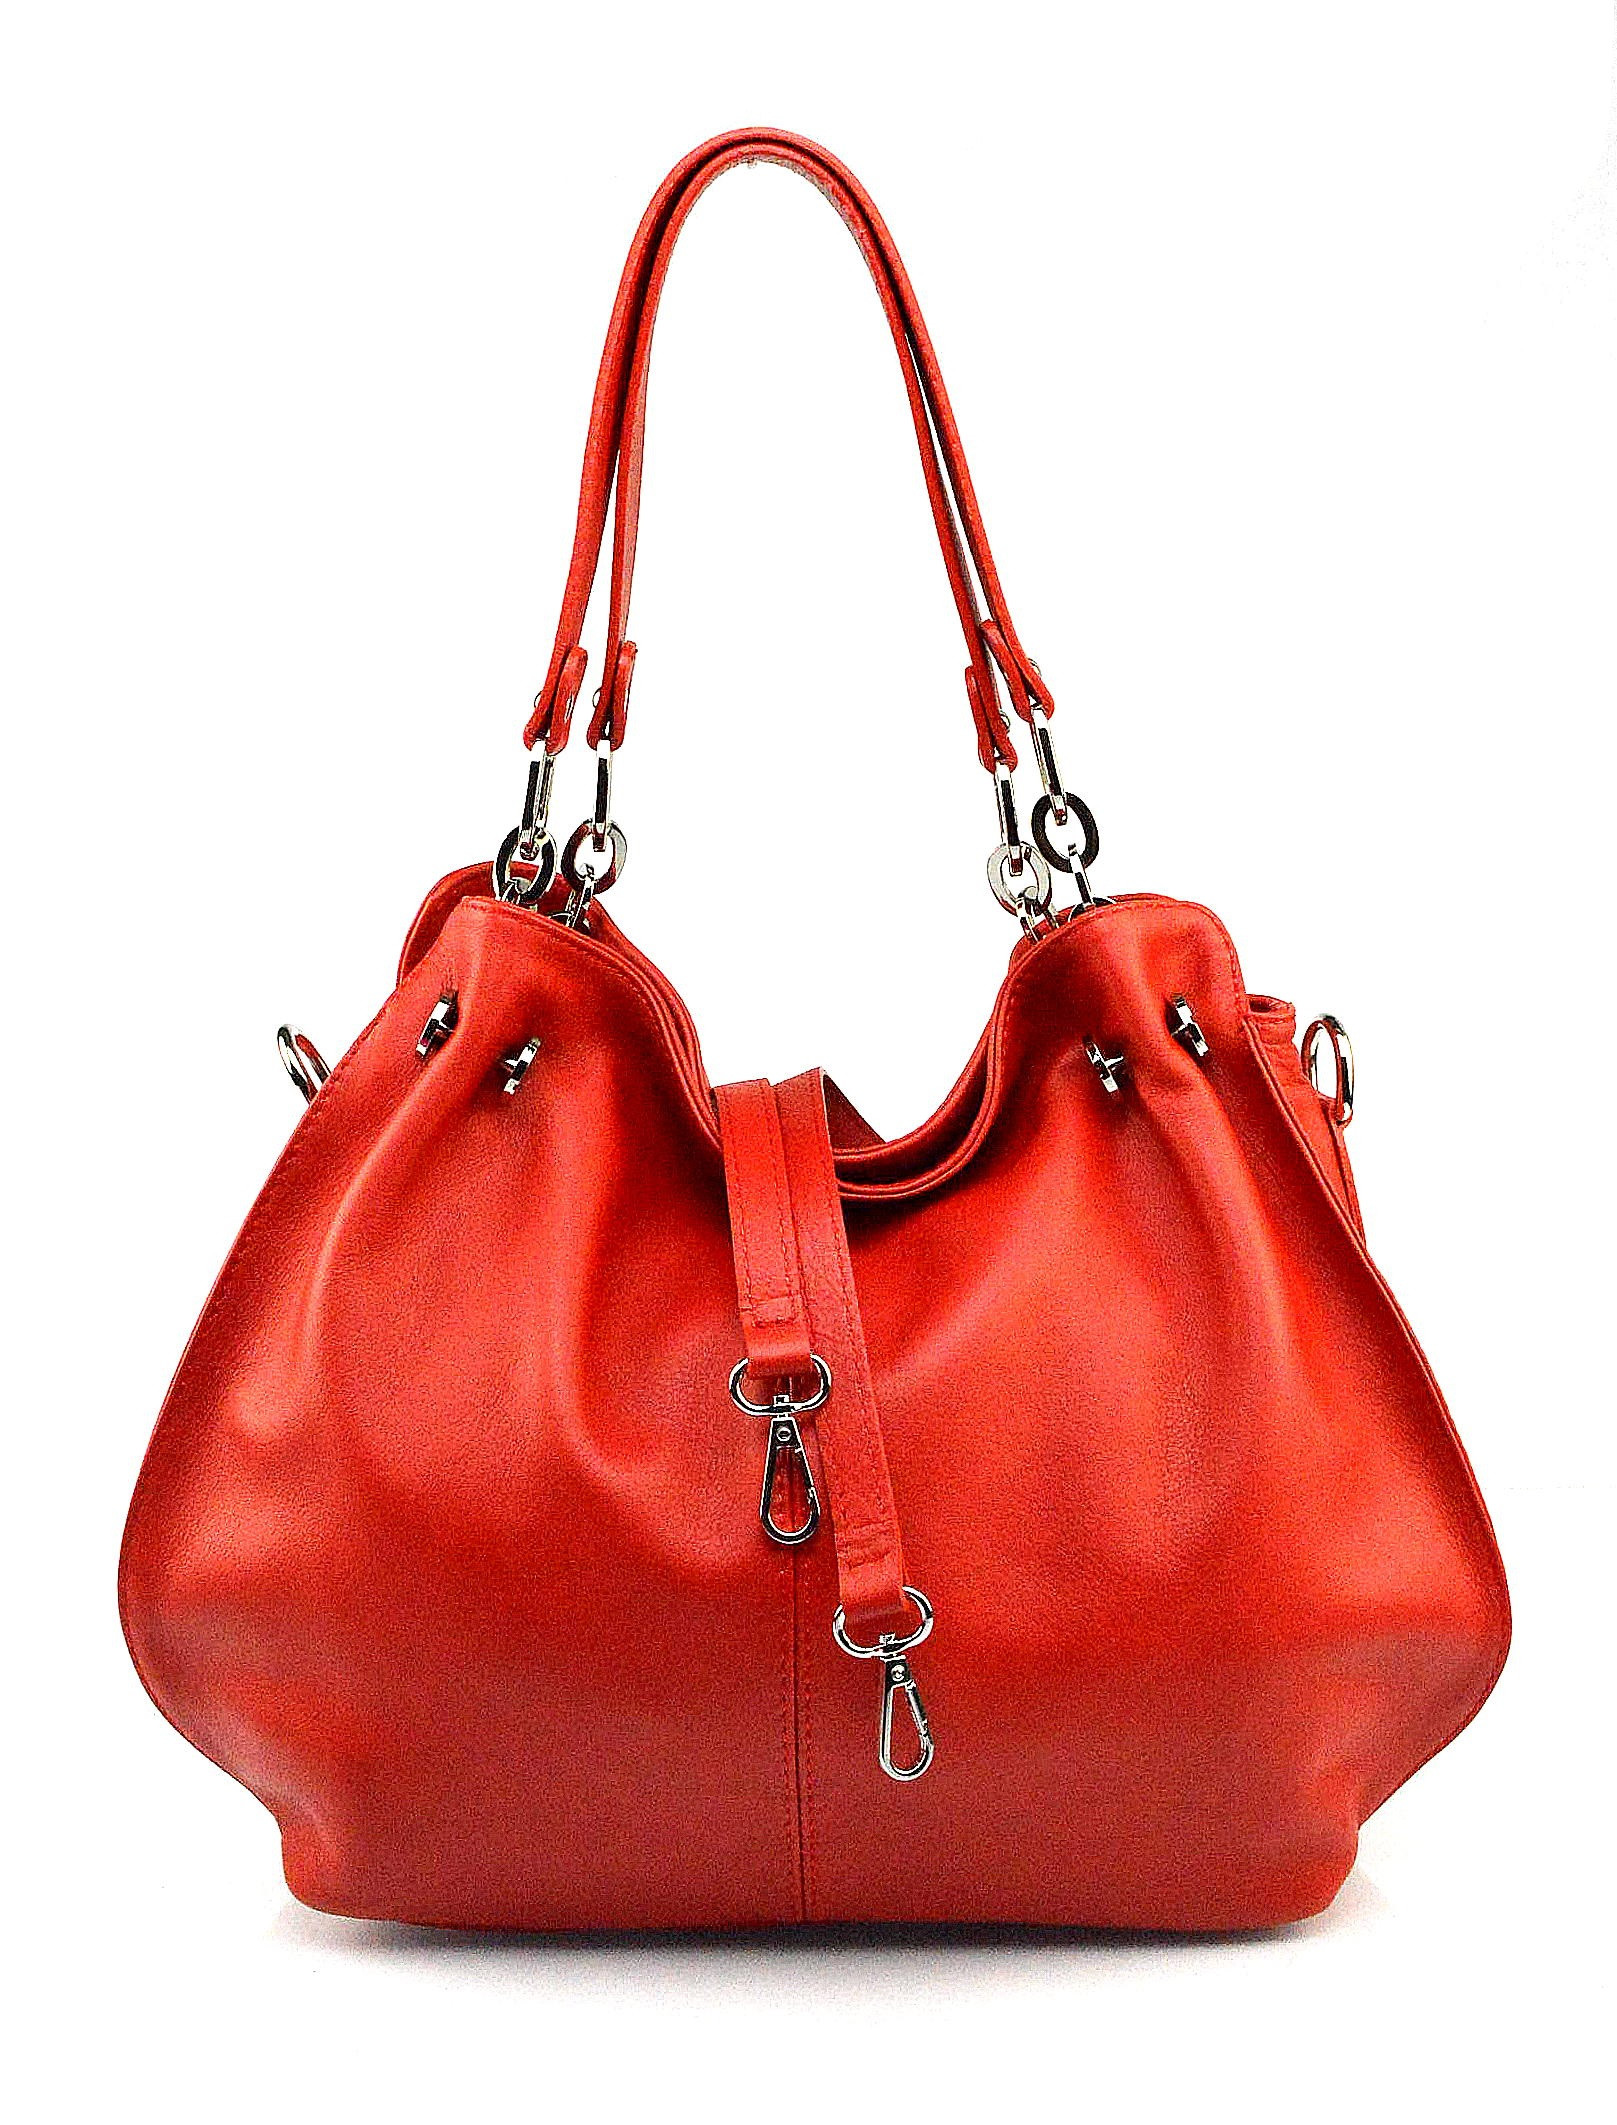 Jedinečná luxusní sytě červená kožená kabelka přes rameno Lorreine